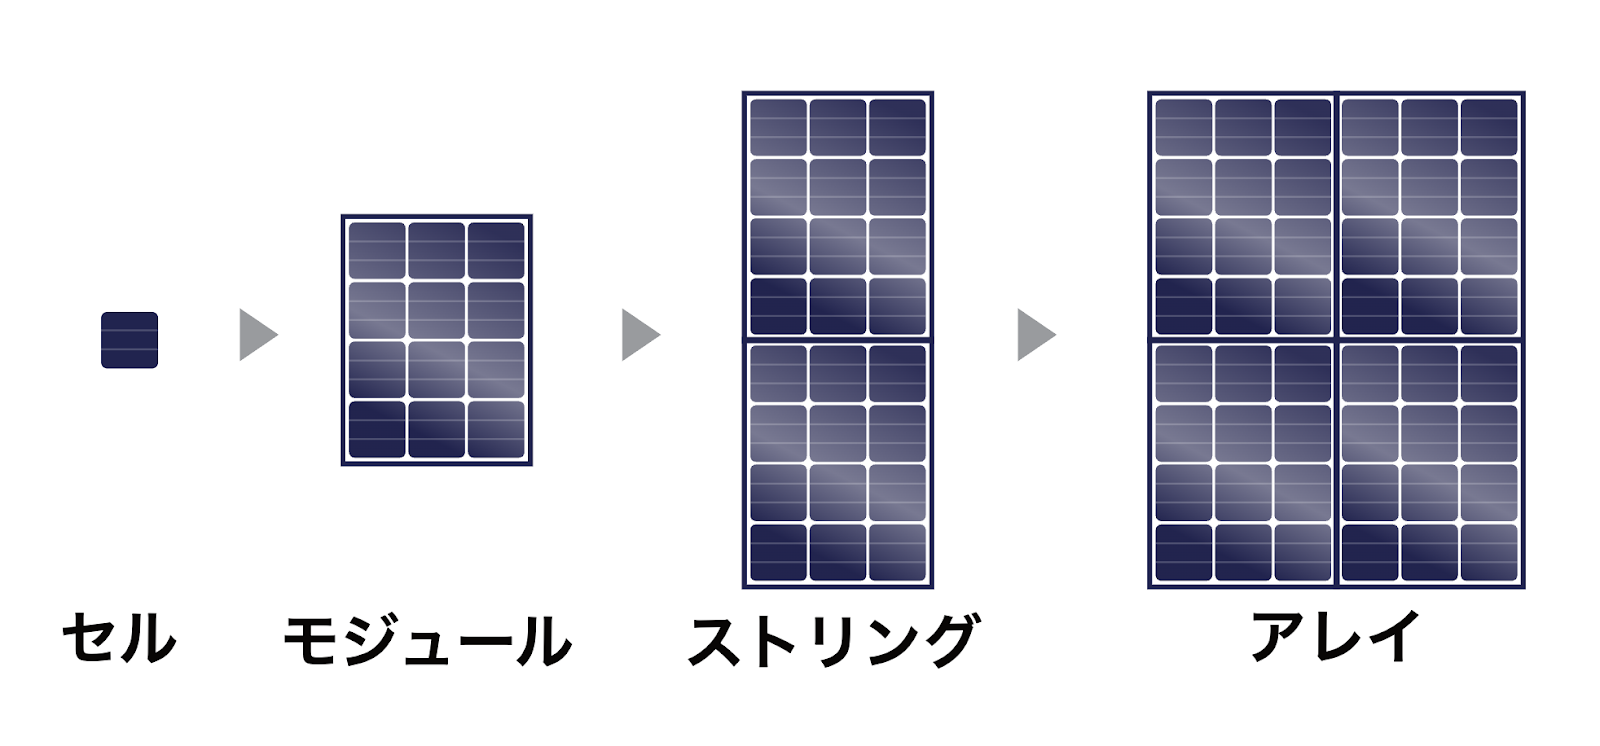 太陽光パネルは単位によって「セル」「モジュール」「ストリング」「アレイ」と呼び方が変わる。